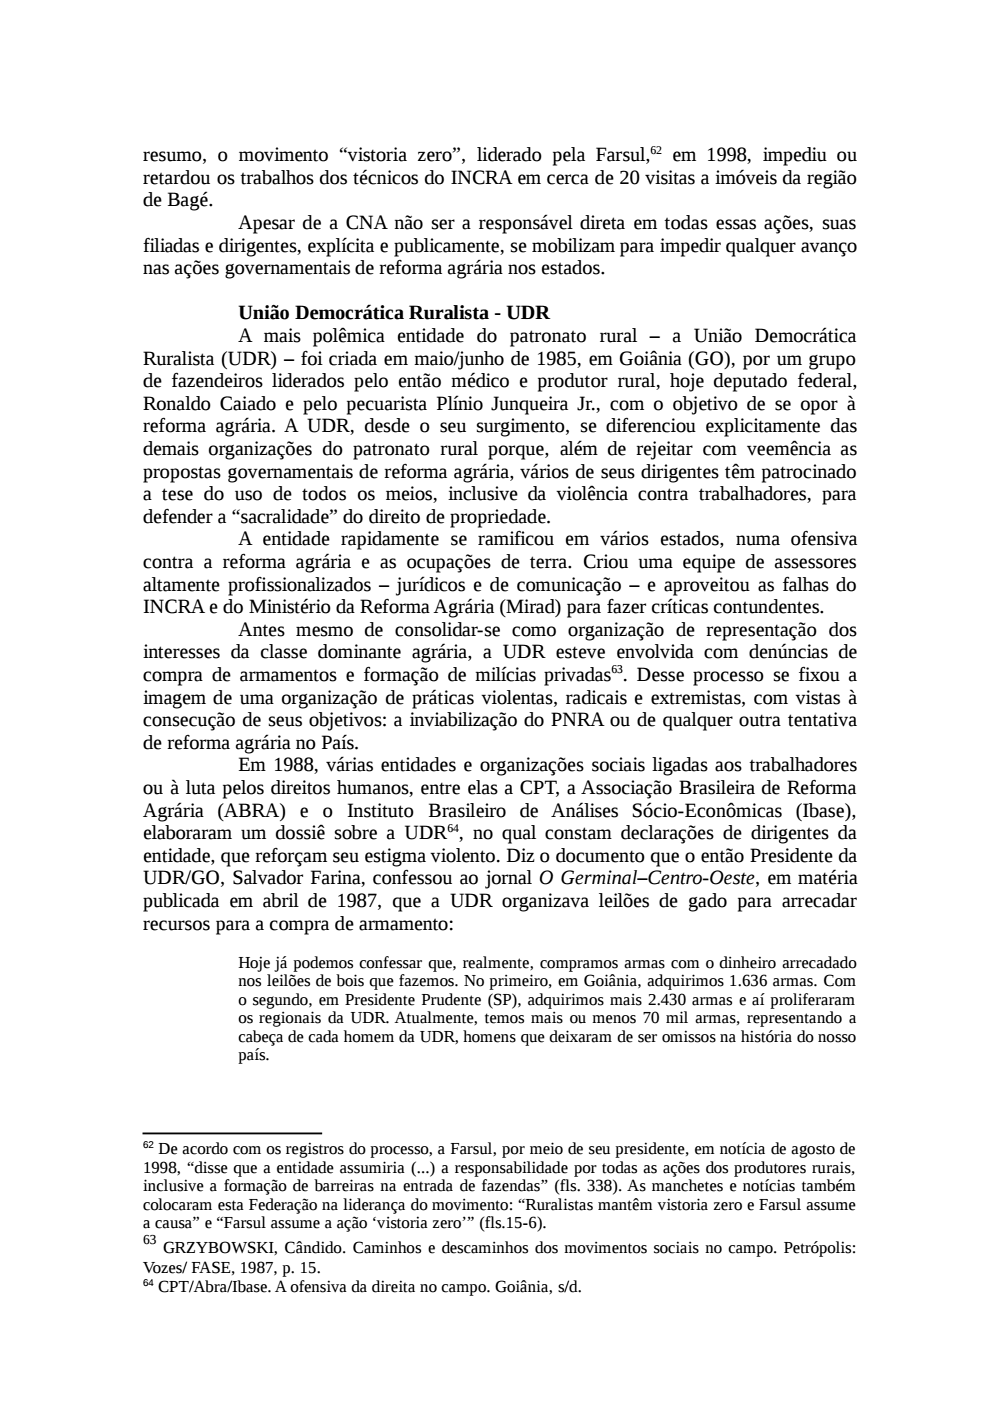 Page 85 from Relatório final da comissão